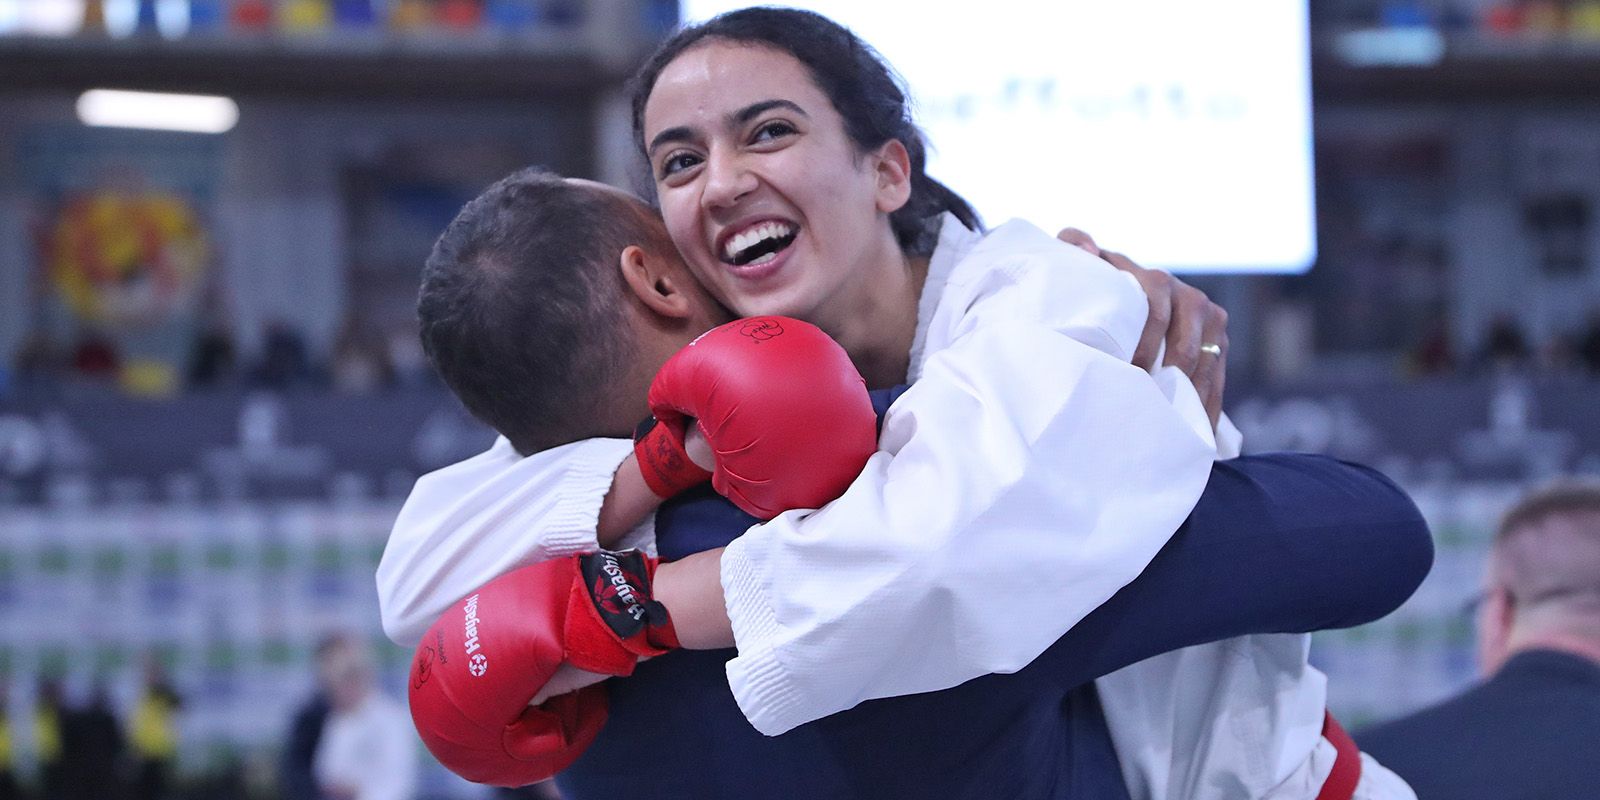 Verdiente Freude. Die Harburgerin Reem Khamis gewant die Europameisterschaft. Foto: pr